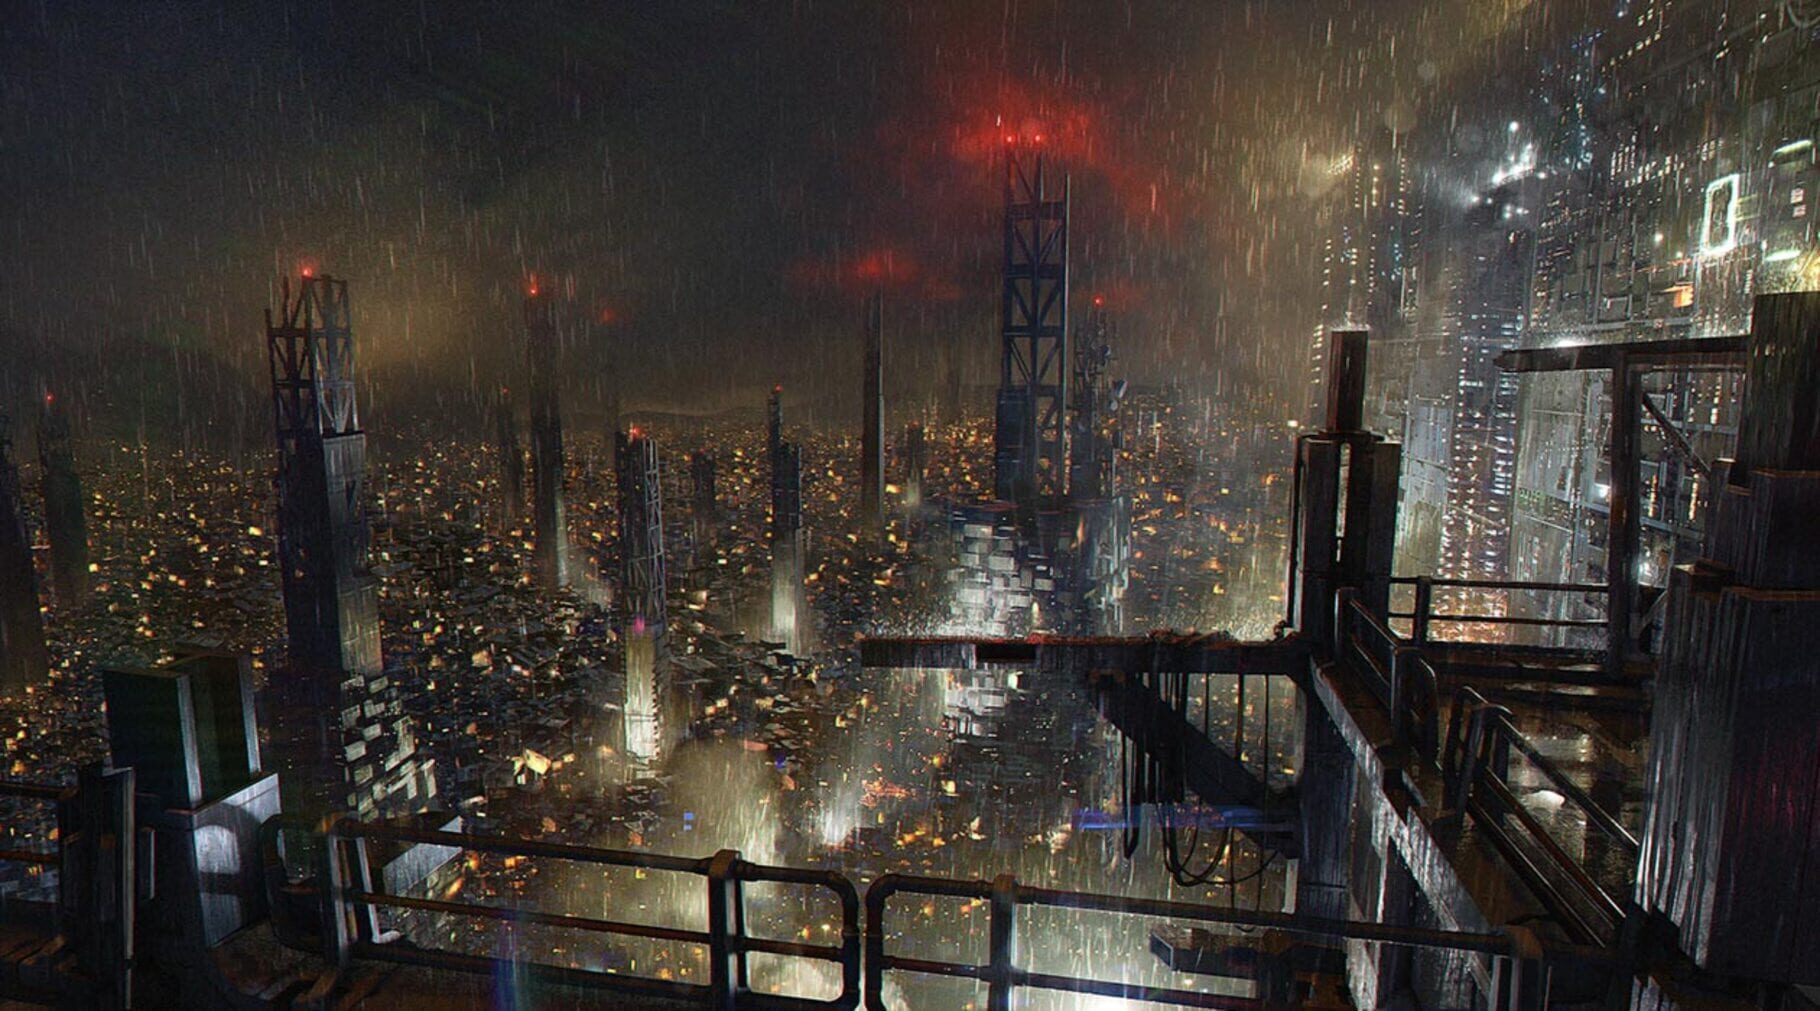 Arte - Deus Ex: Mankind Divided